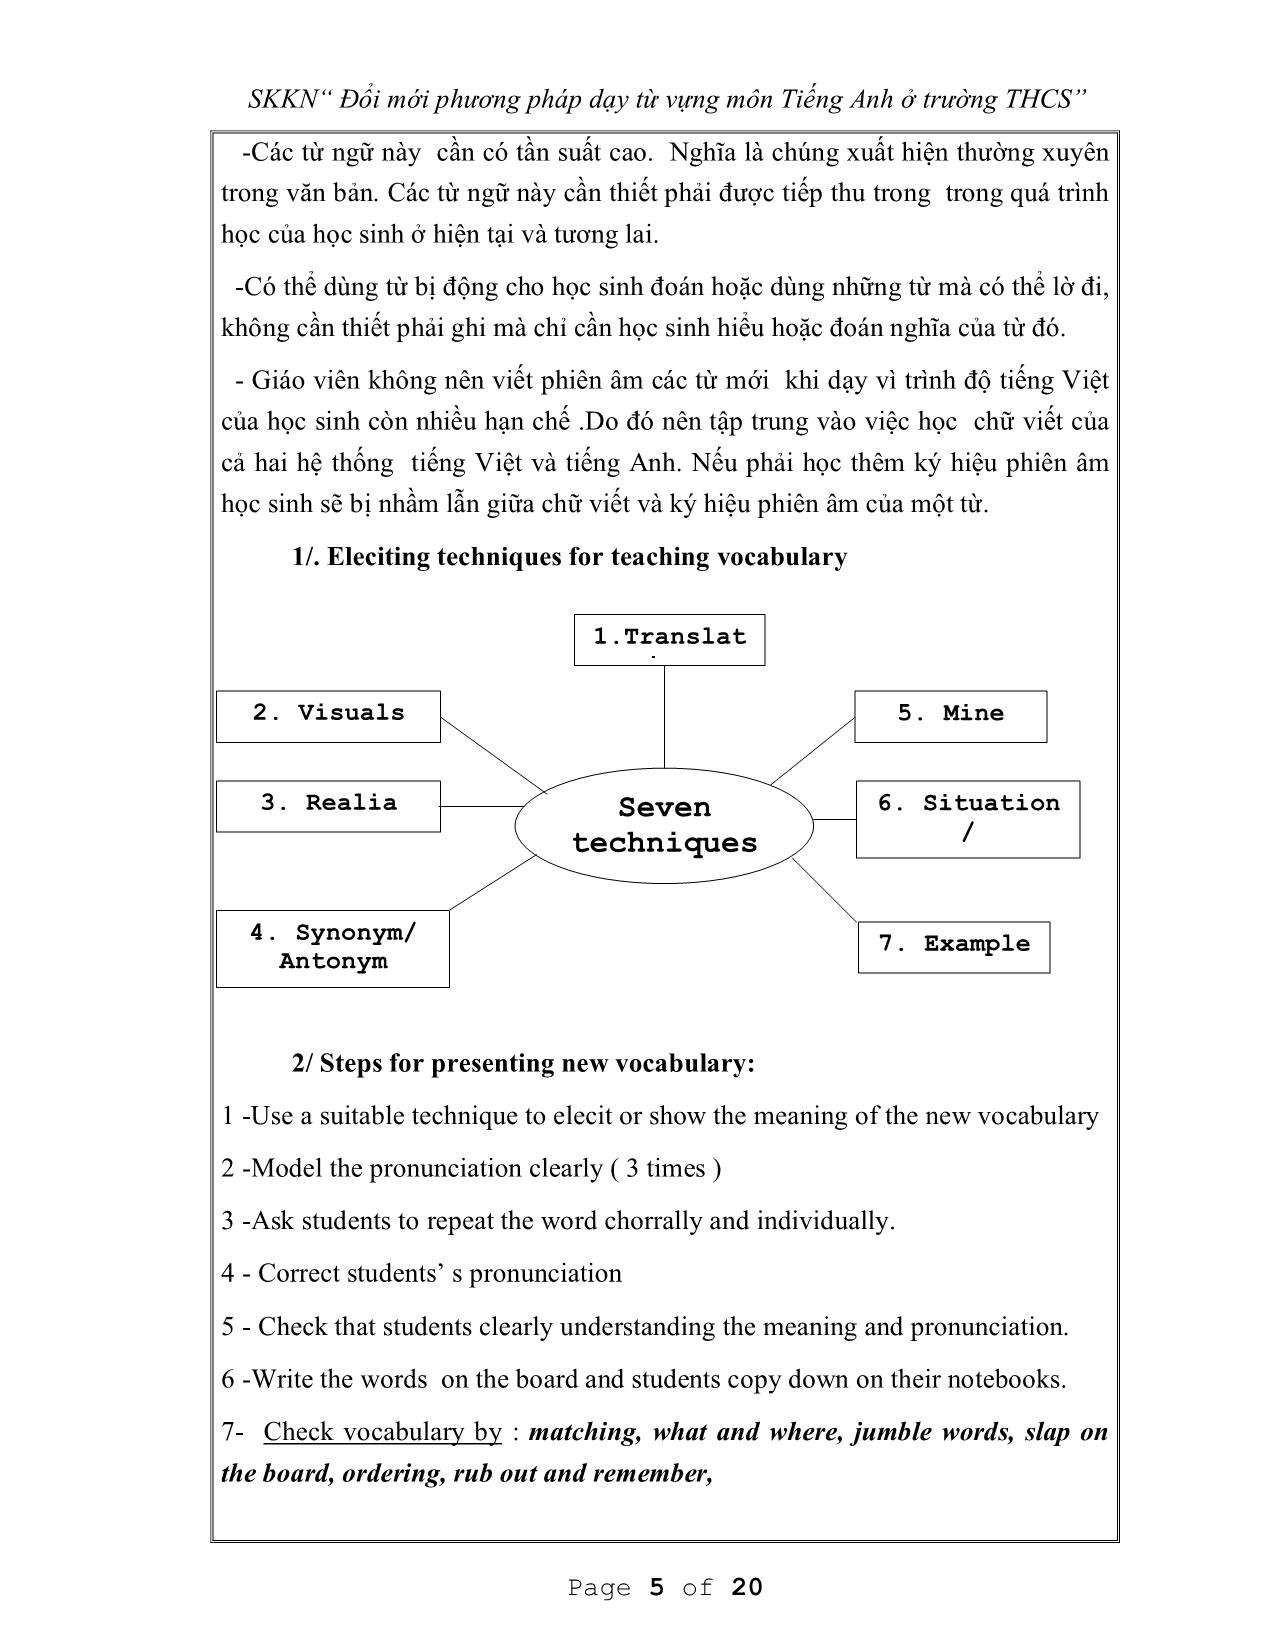 Sáng kiến kinh nghiệm Đổi mới phương pháp dạy từ vựng môn tiếng Anh ở trường THCS trang 6